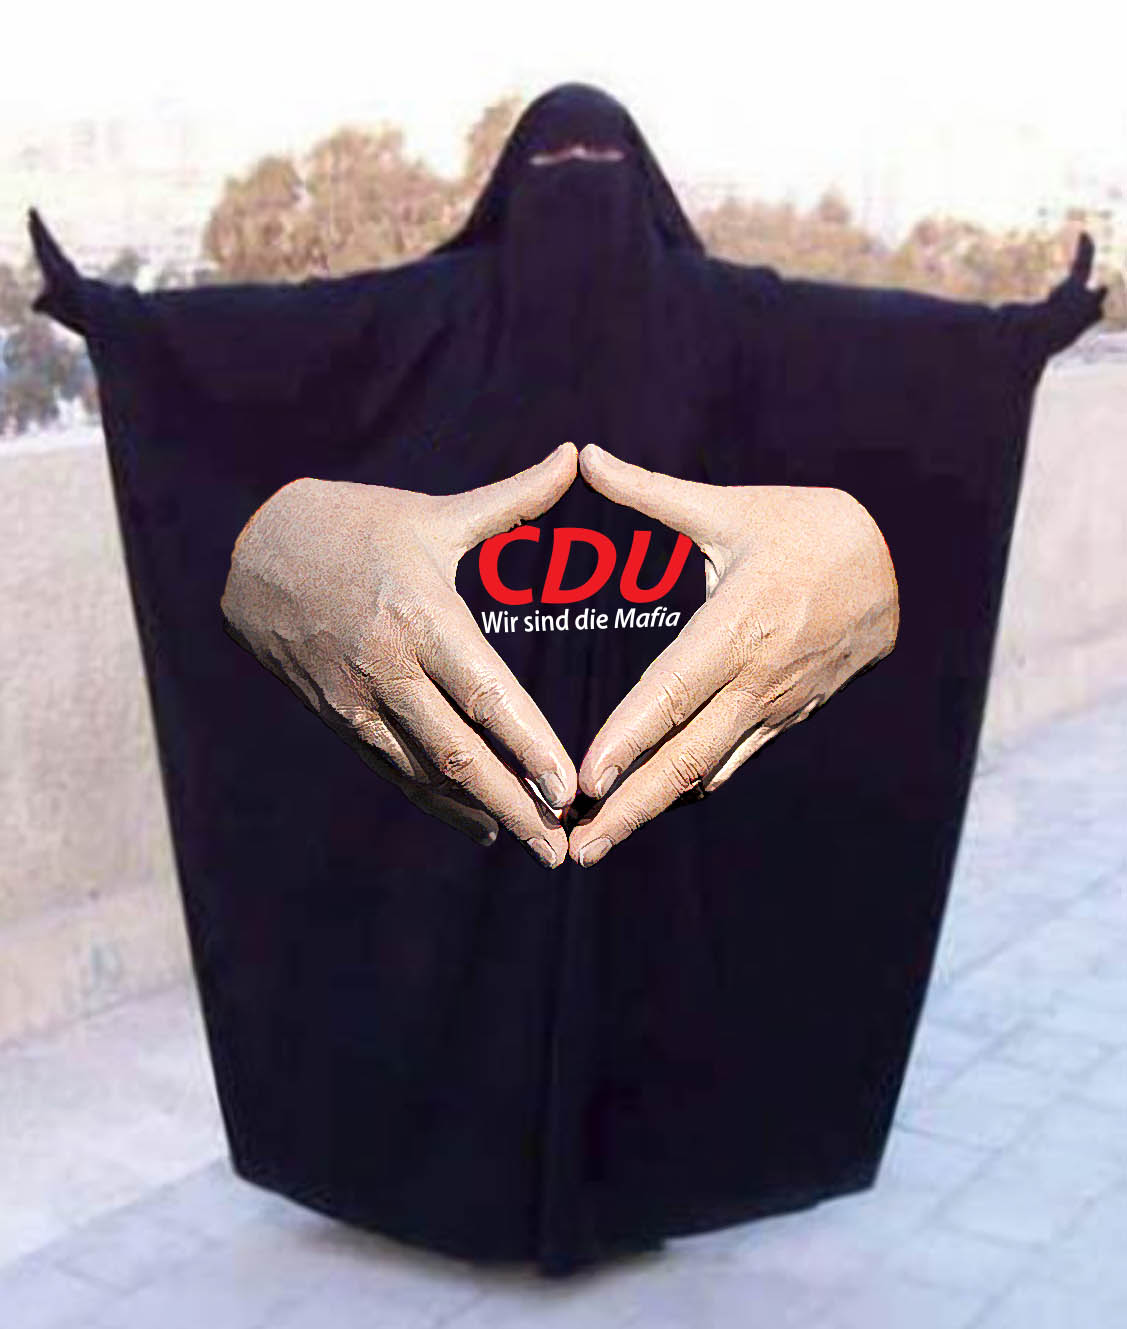 Angela Merkel Raute burka Islam Frauen Zeichen Markenzeichen Anpassung Konvertierung Integration Zuwanderung Anpassung